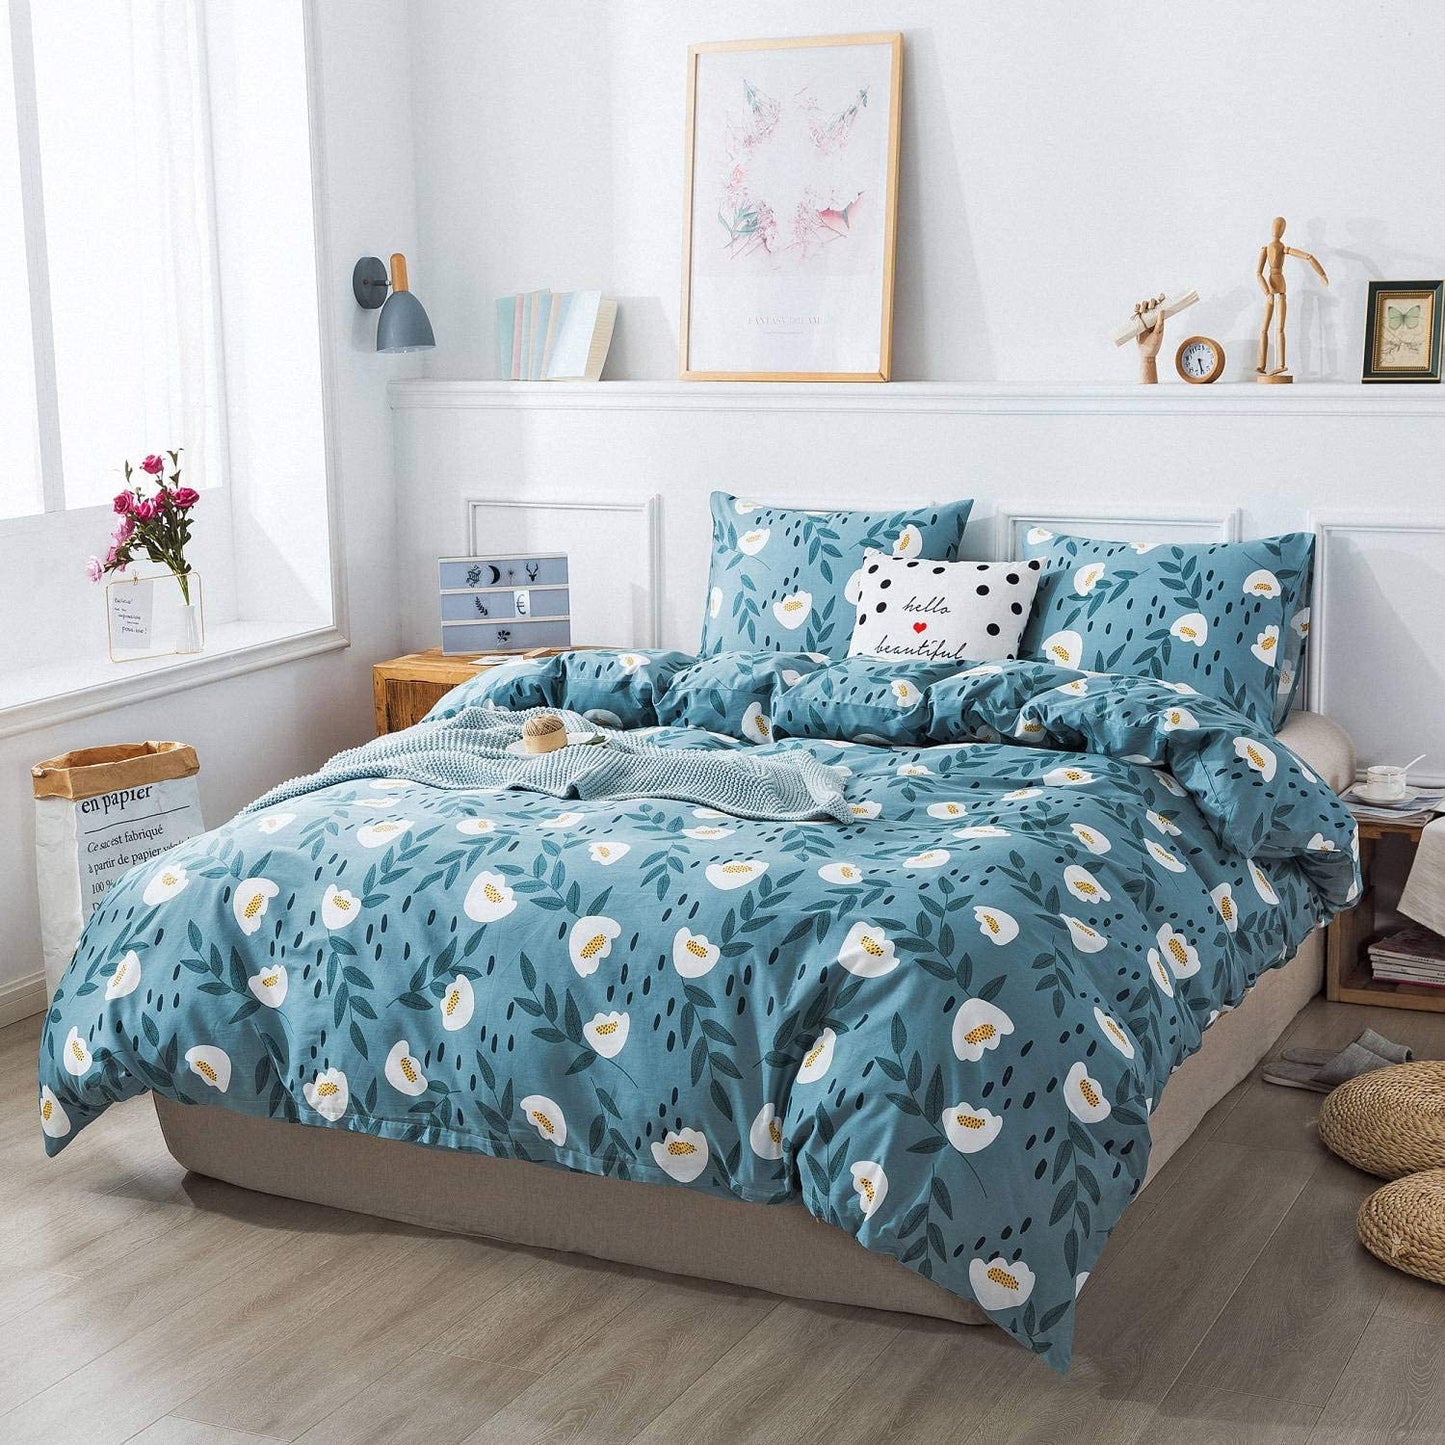 Cotton Duvet Cover Queen Size Blue Floral Comforter Cover Set